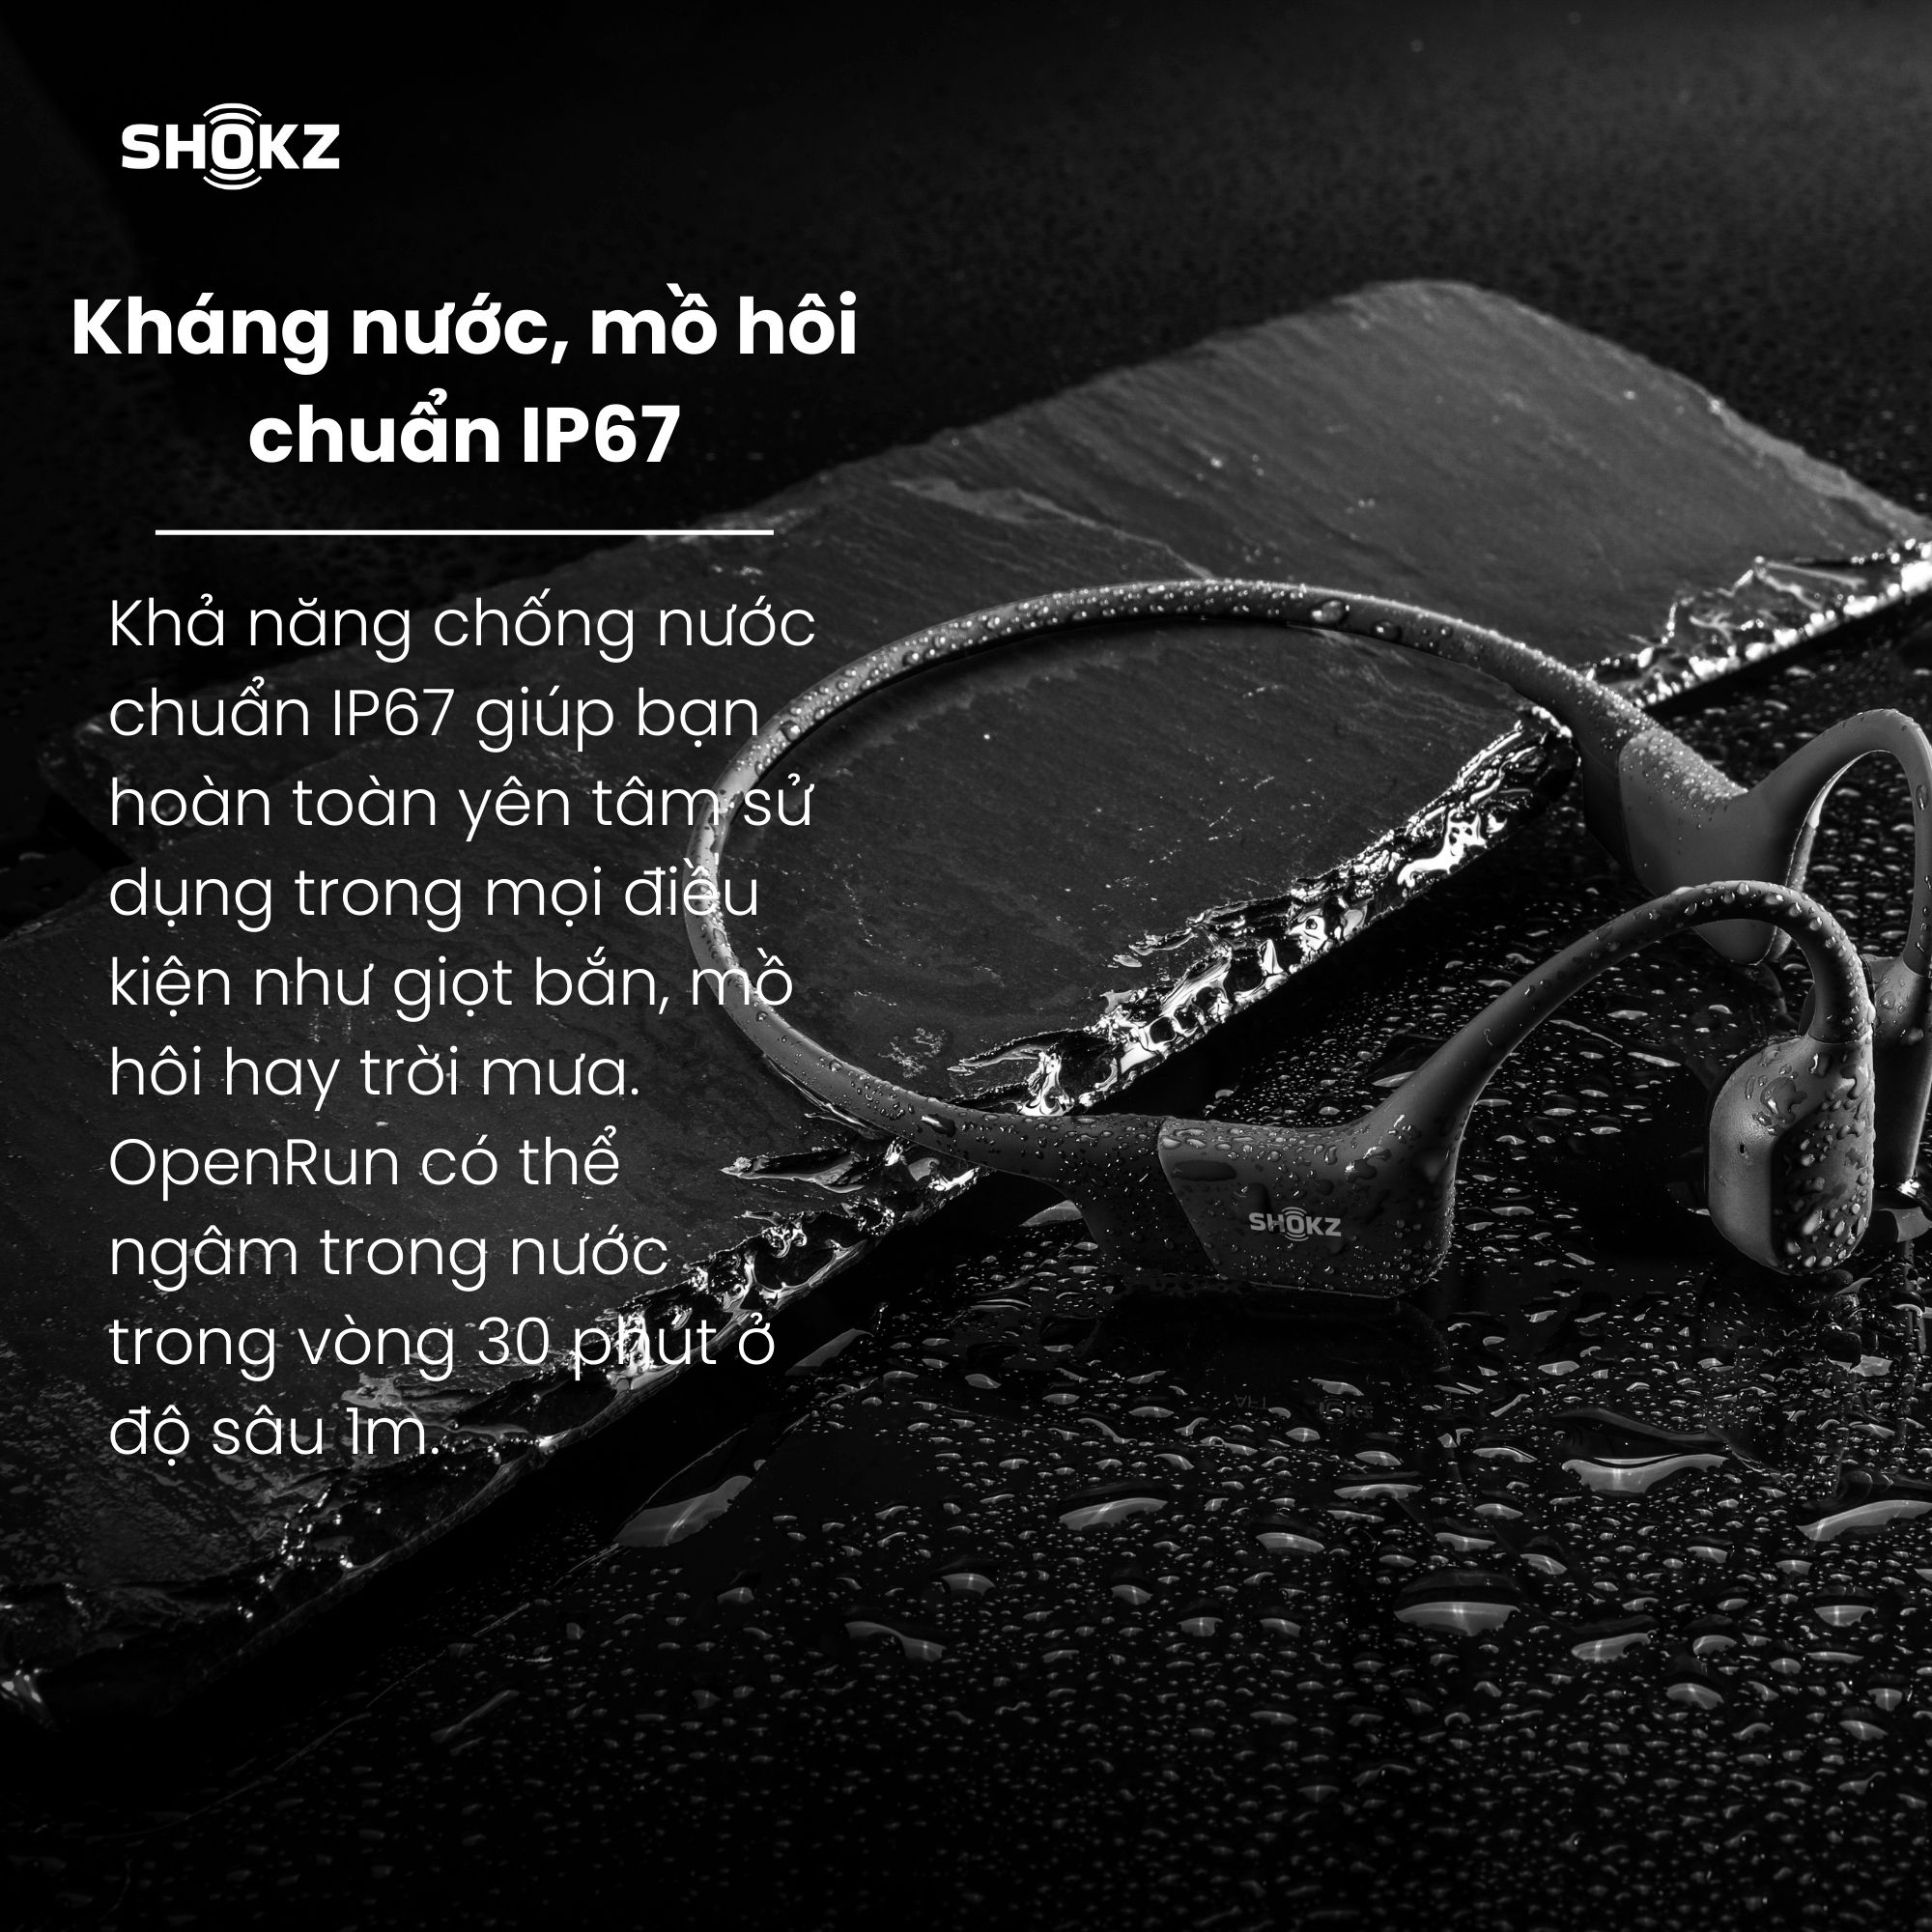 Tai Nghe Bluetooth Thể Thao Dẫn Truyền Âm Thanh Qua Xương SHOKZ OPEN RUN MINI S803 Màu Đen - Hàng Chính Hãng